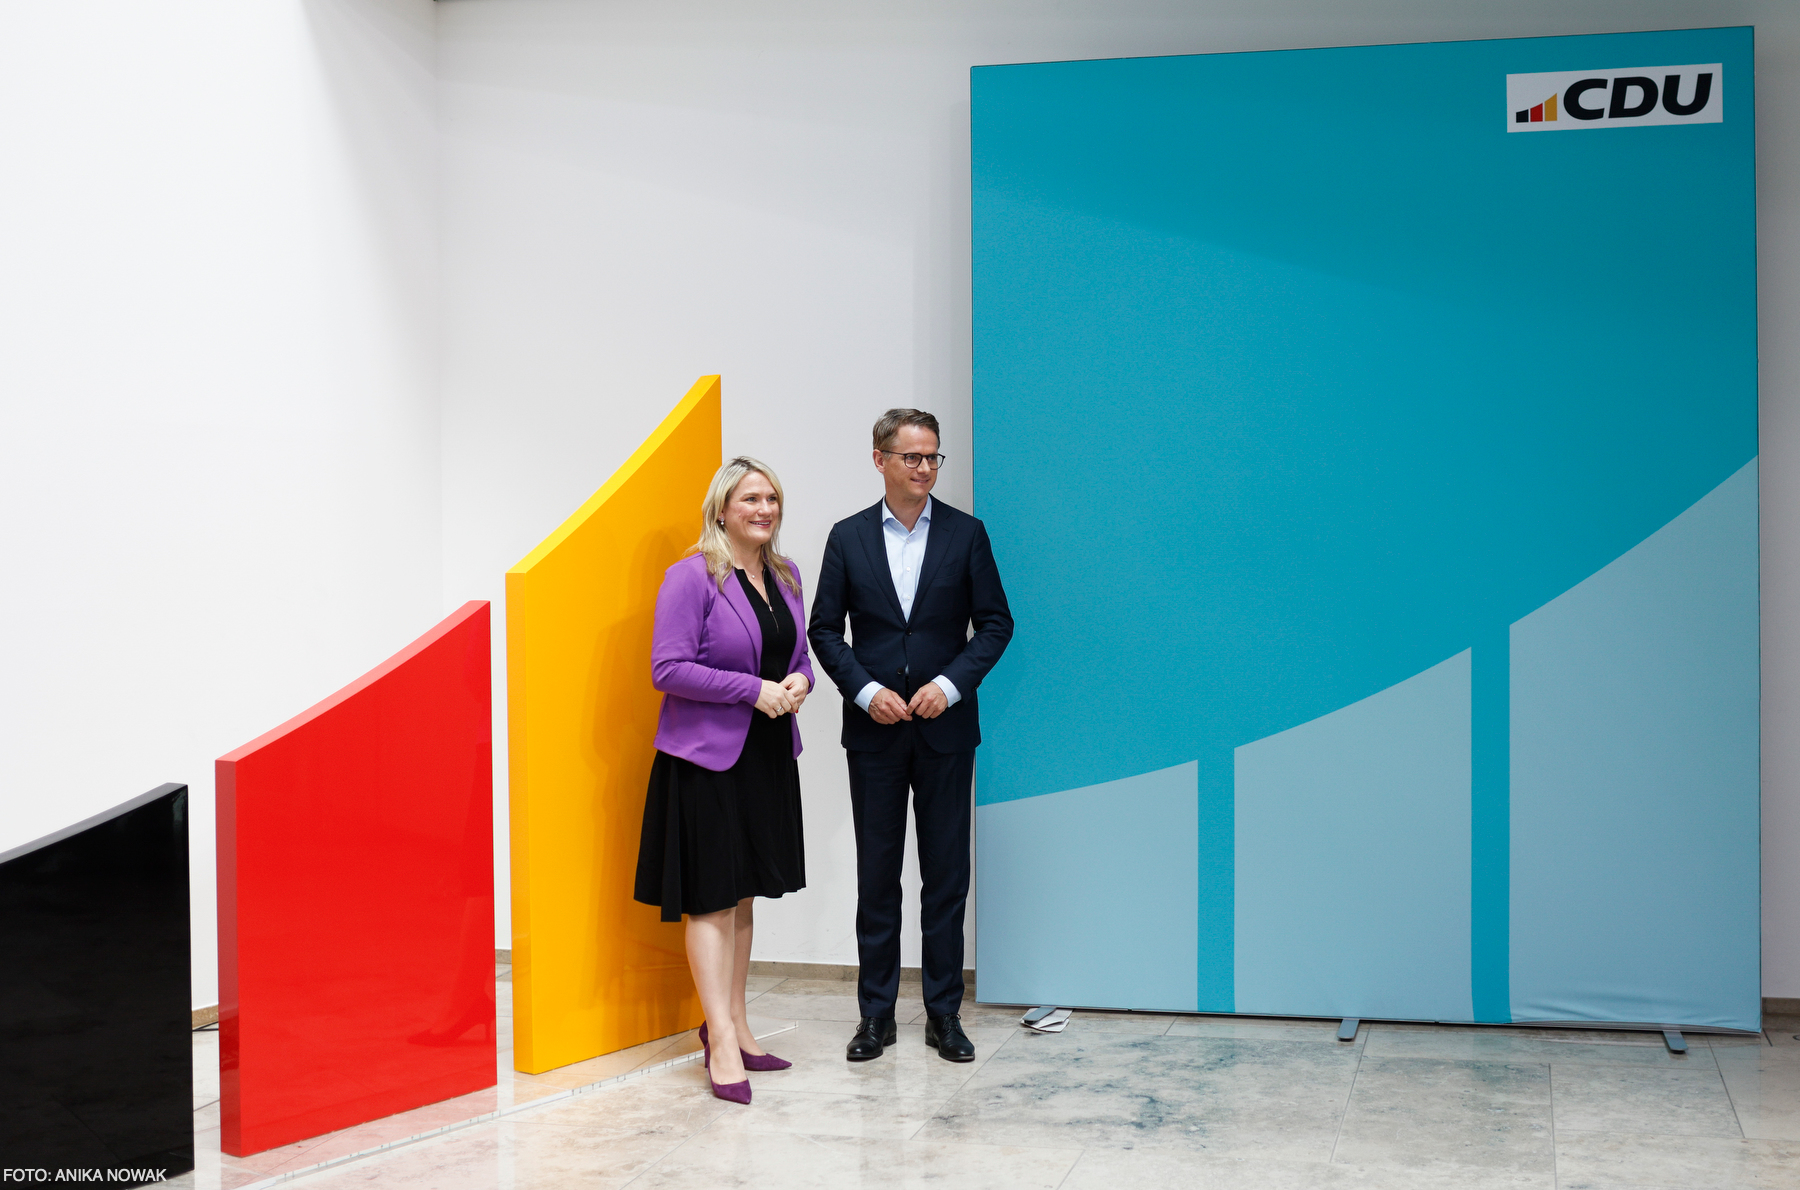 Die CDU-Generalsekretäre Christina Stumpp und Carsten Linnemann vor dem neuen CDU-Bogen. Er steht für Aufbruch, Erneuerung, Modernität. 